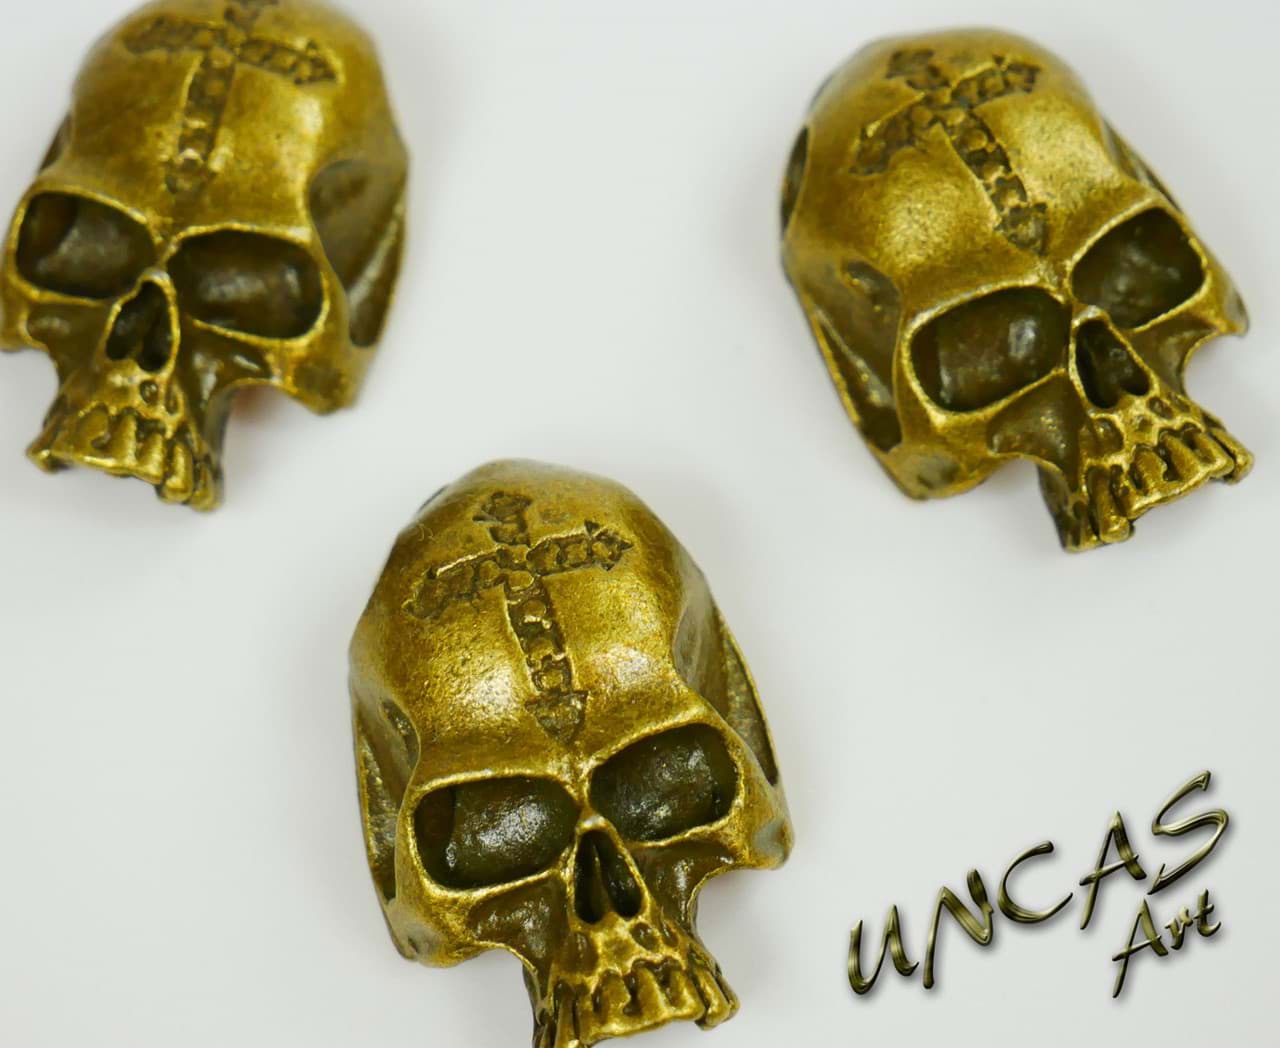 Kuscheltiere.biz . one Eye Skull Bronze Metall Totenkopf Pirat * Beads für  Paracord